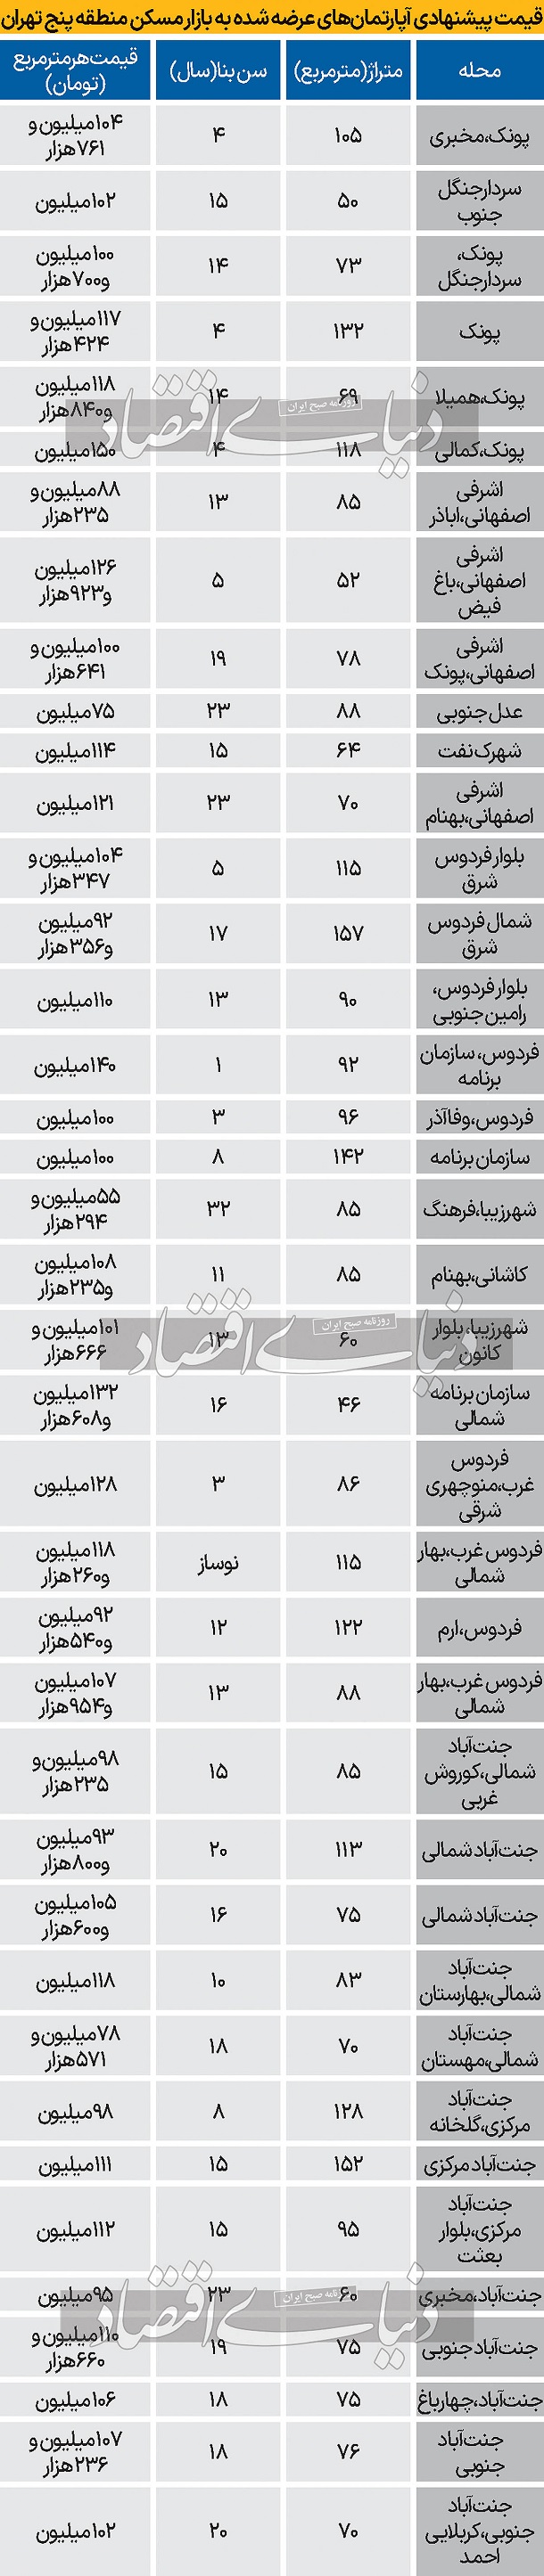 جدول قیمت آپارتمان در منطقه 5 تهران